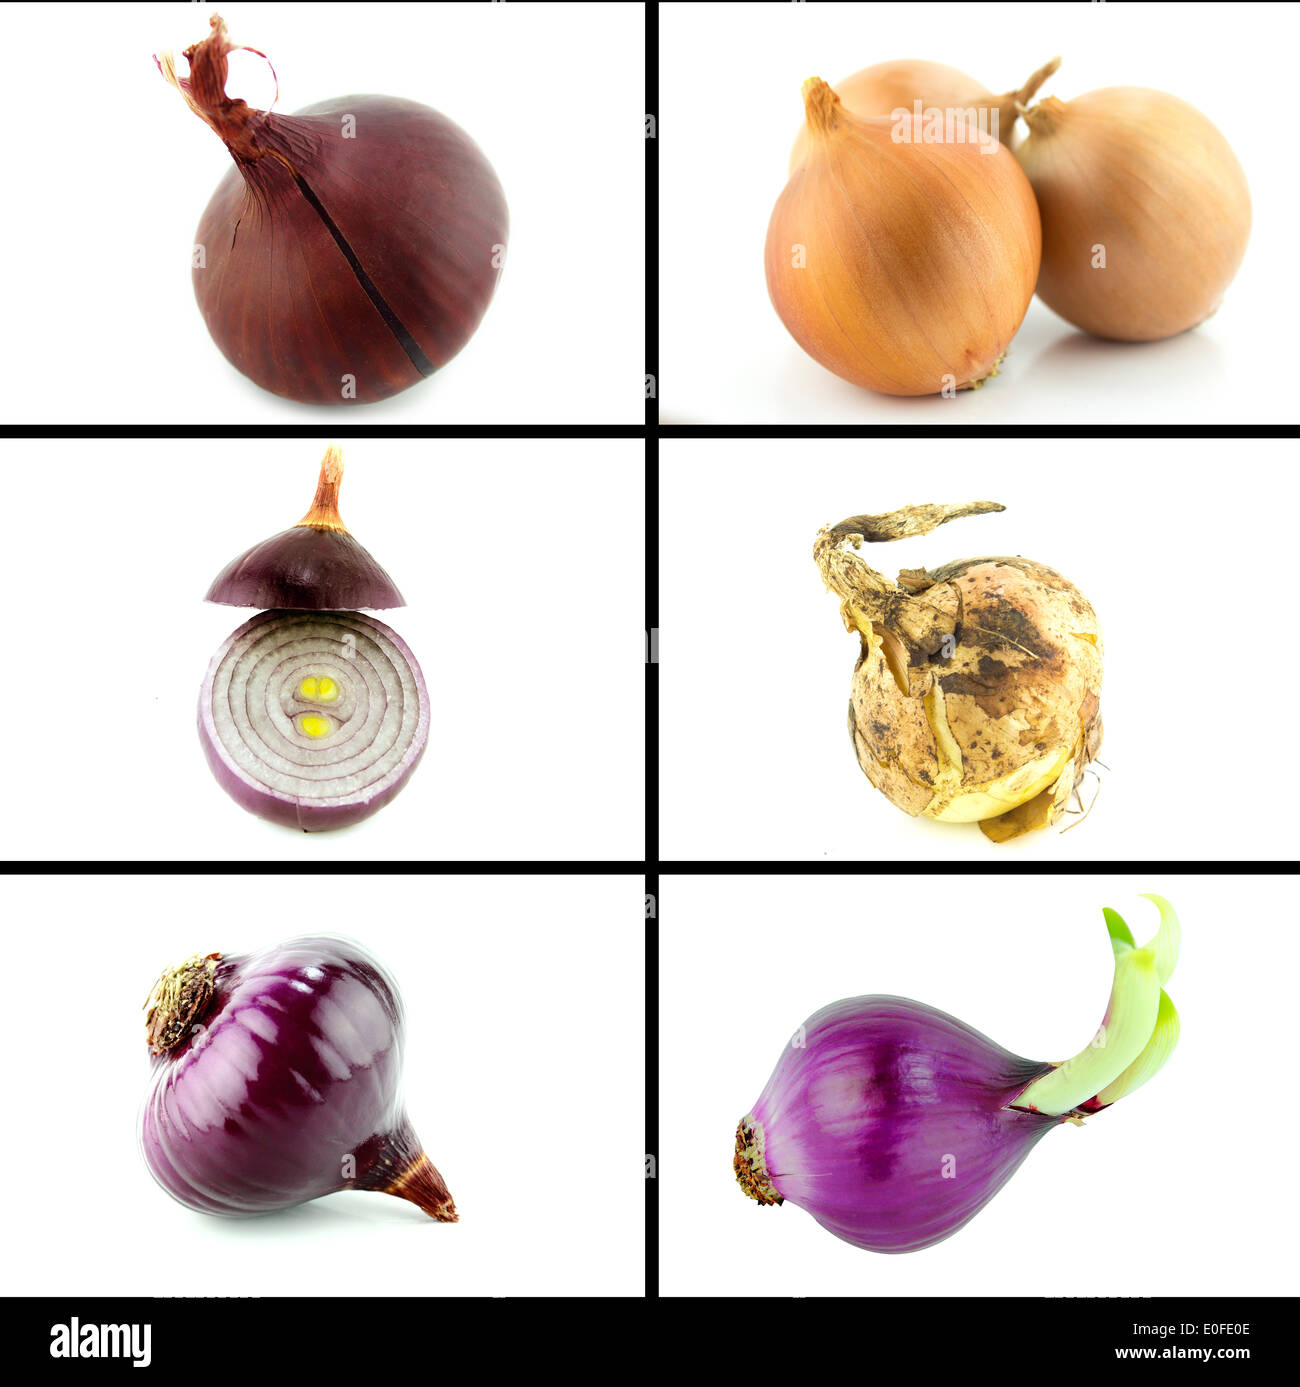 https://c8.alamy.com/comp/E0FE0E/healthy-and-organic-food-set-of-fresh-onion-E0FE0E.jpg